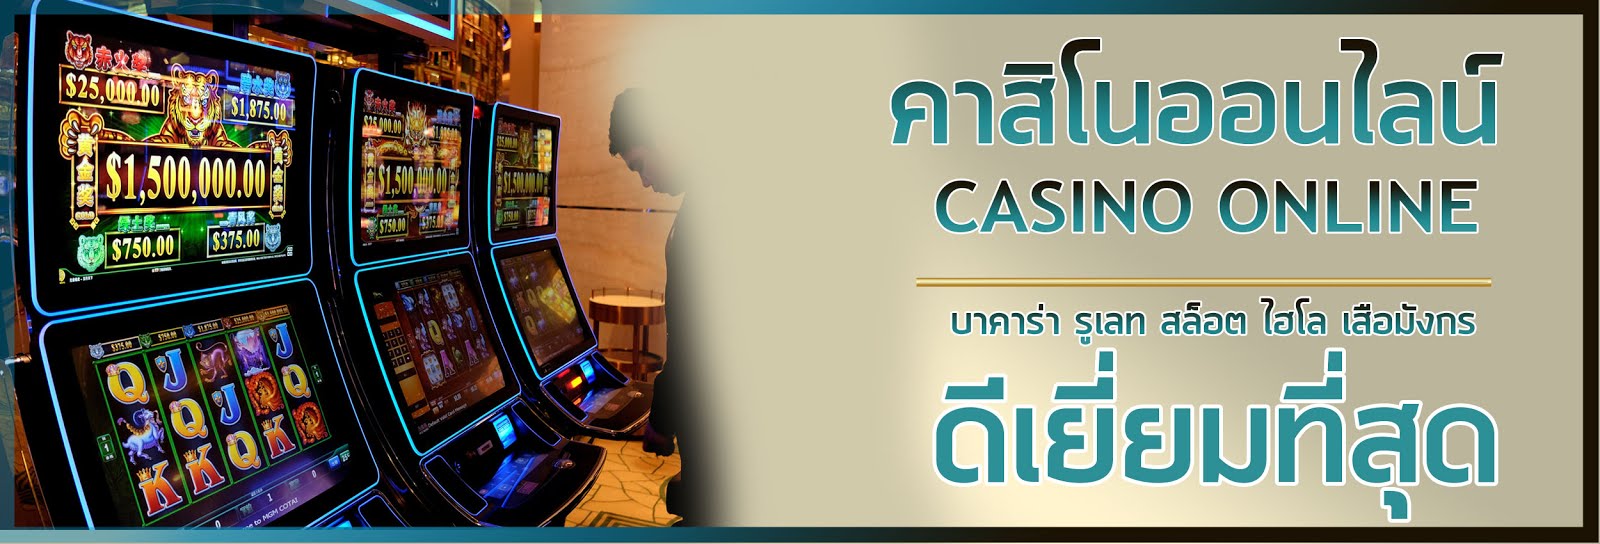 คาสิโนออนไลน์ 999slot.casino